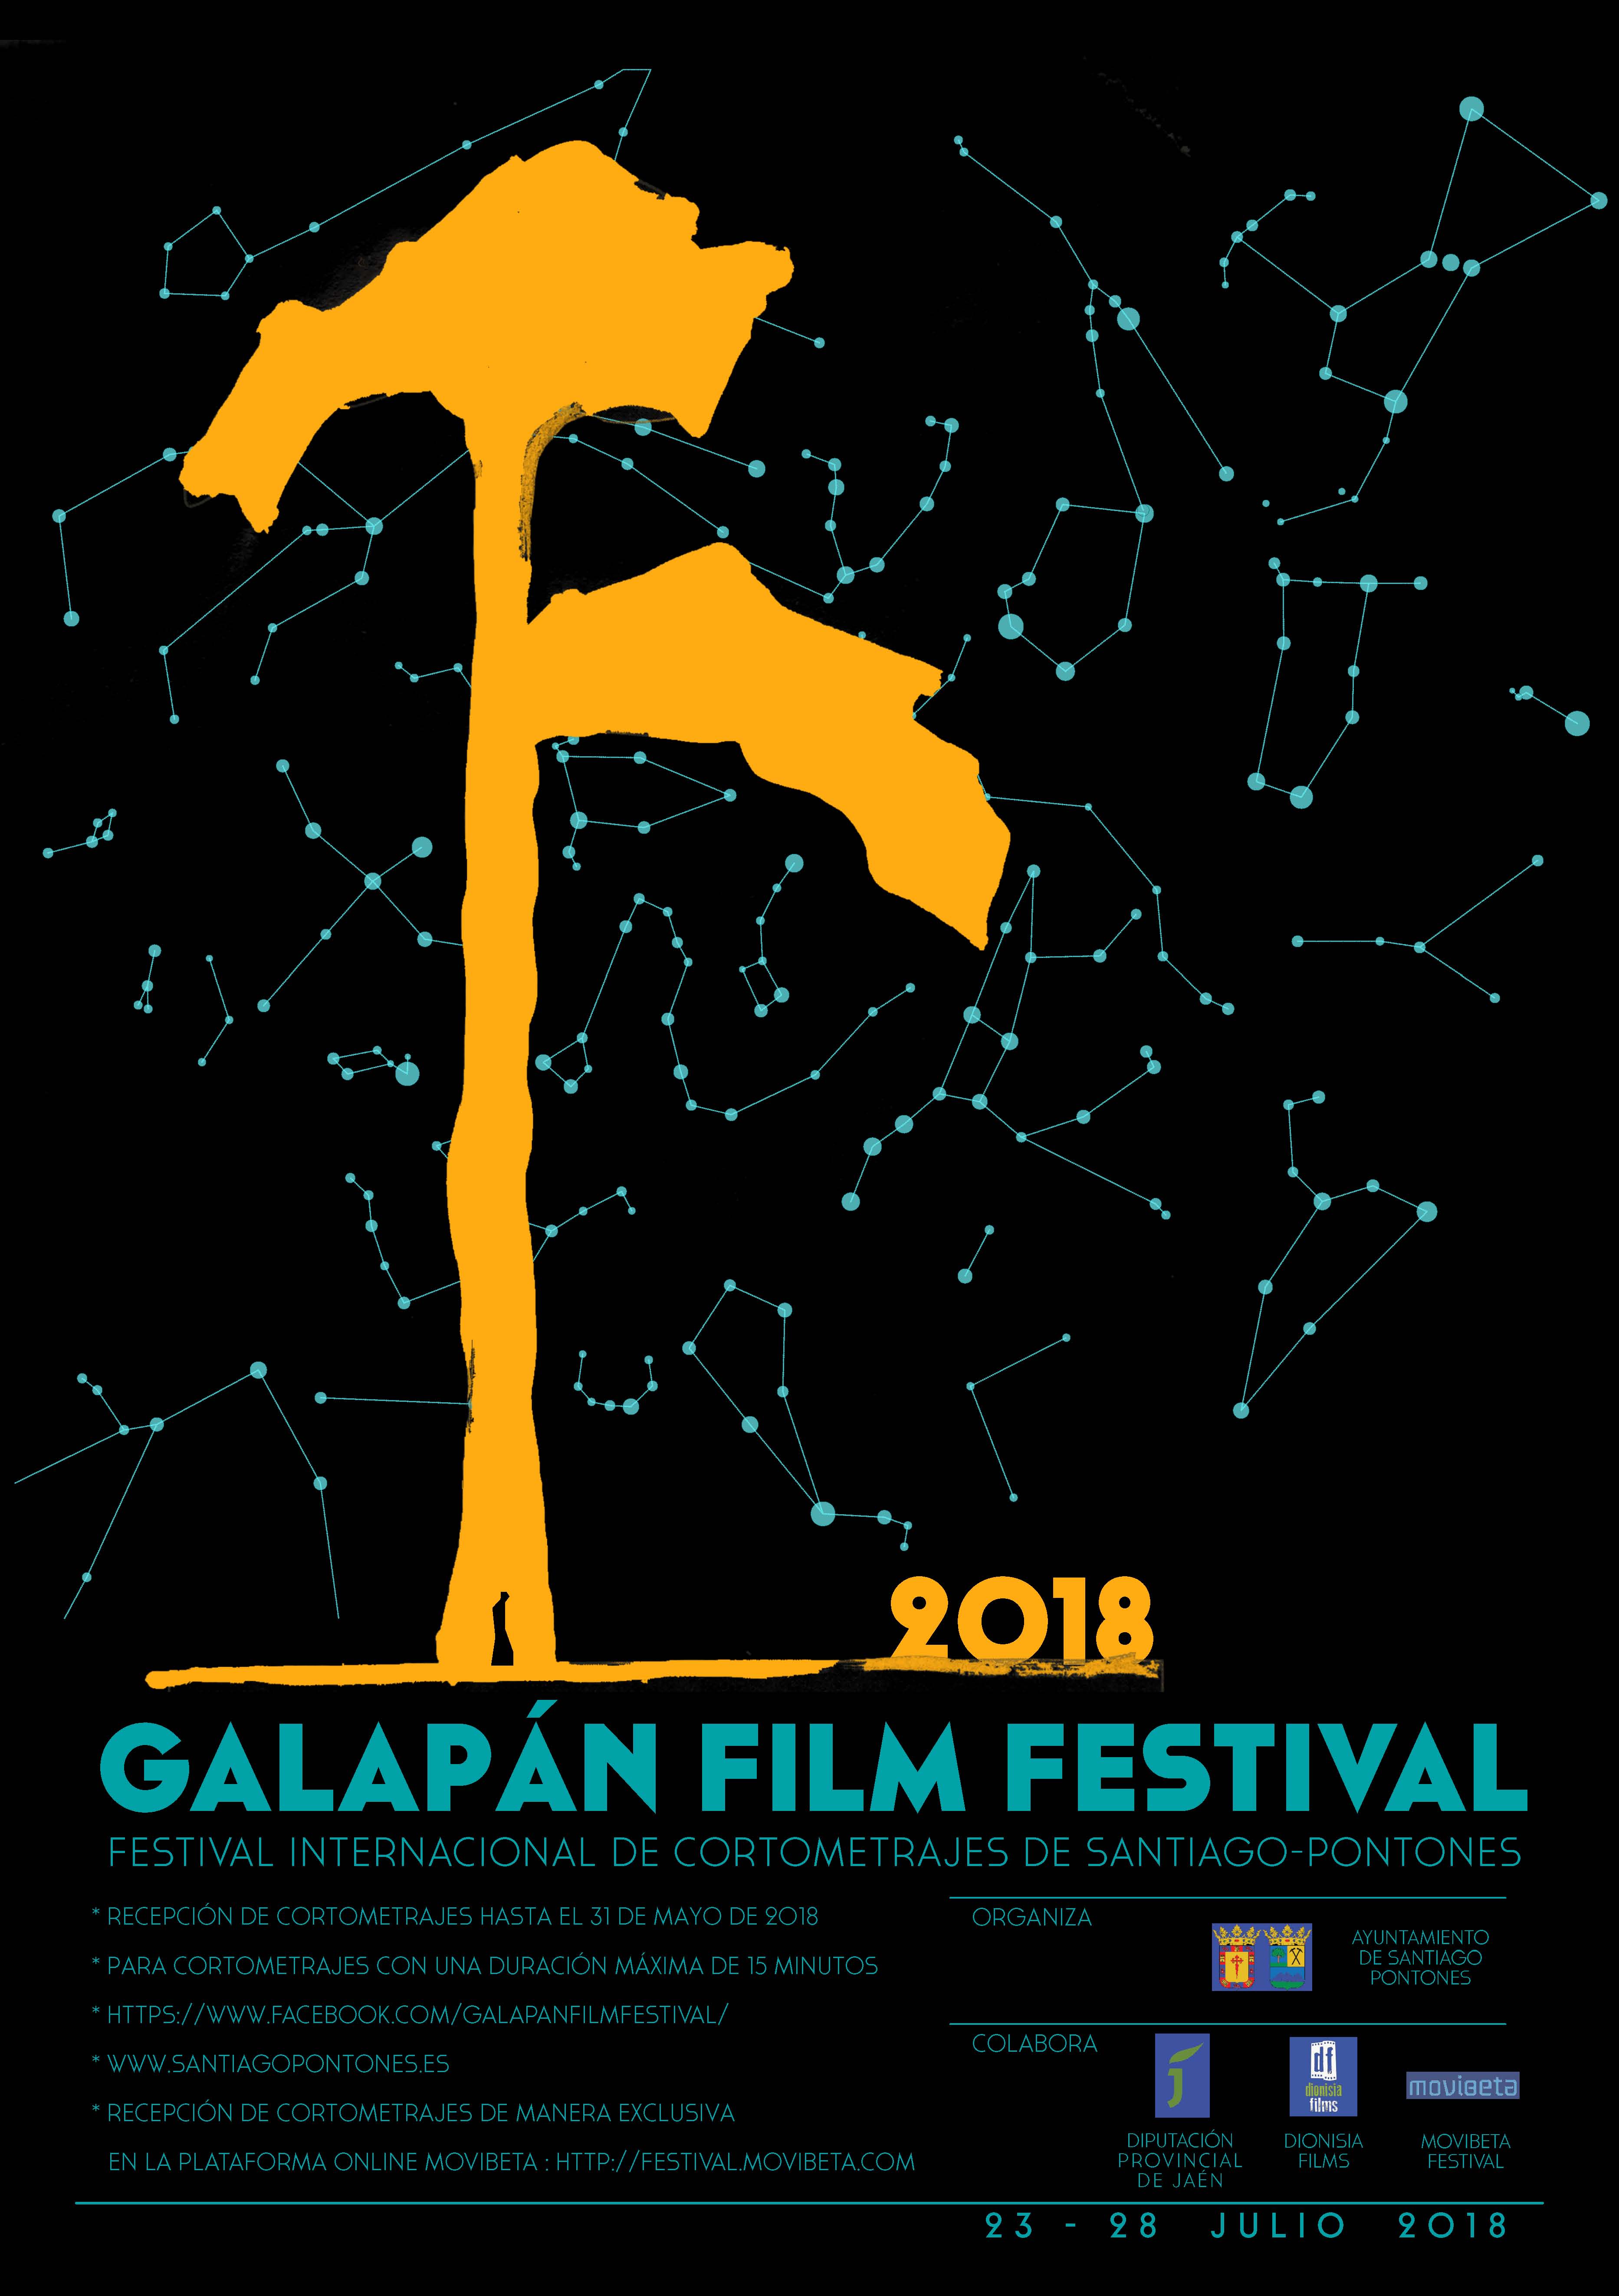 Galapa_n Film Festival 2018